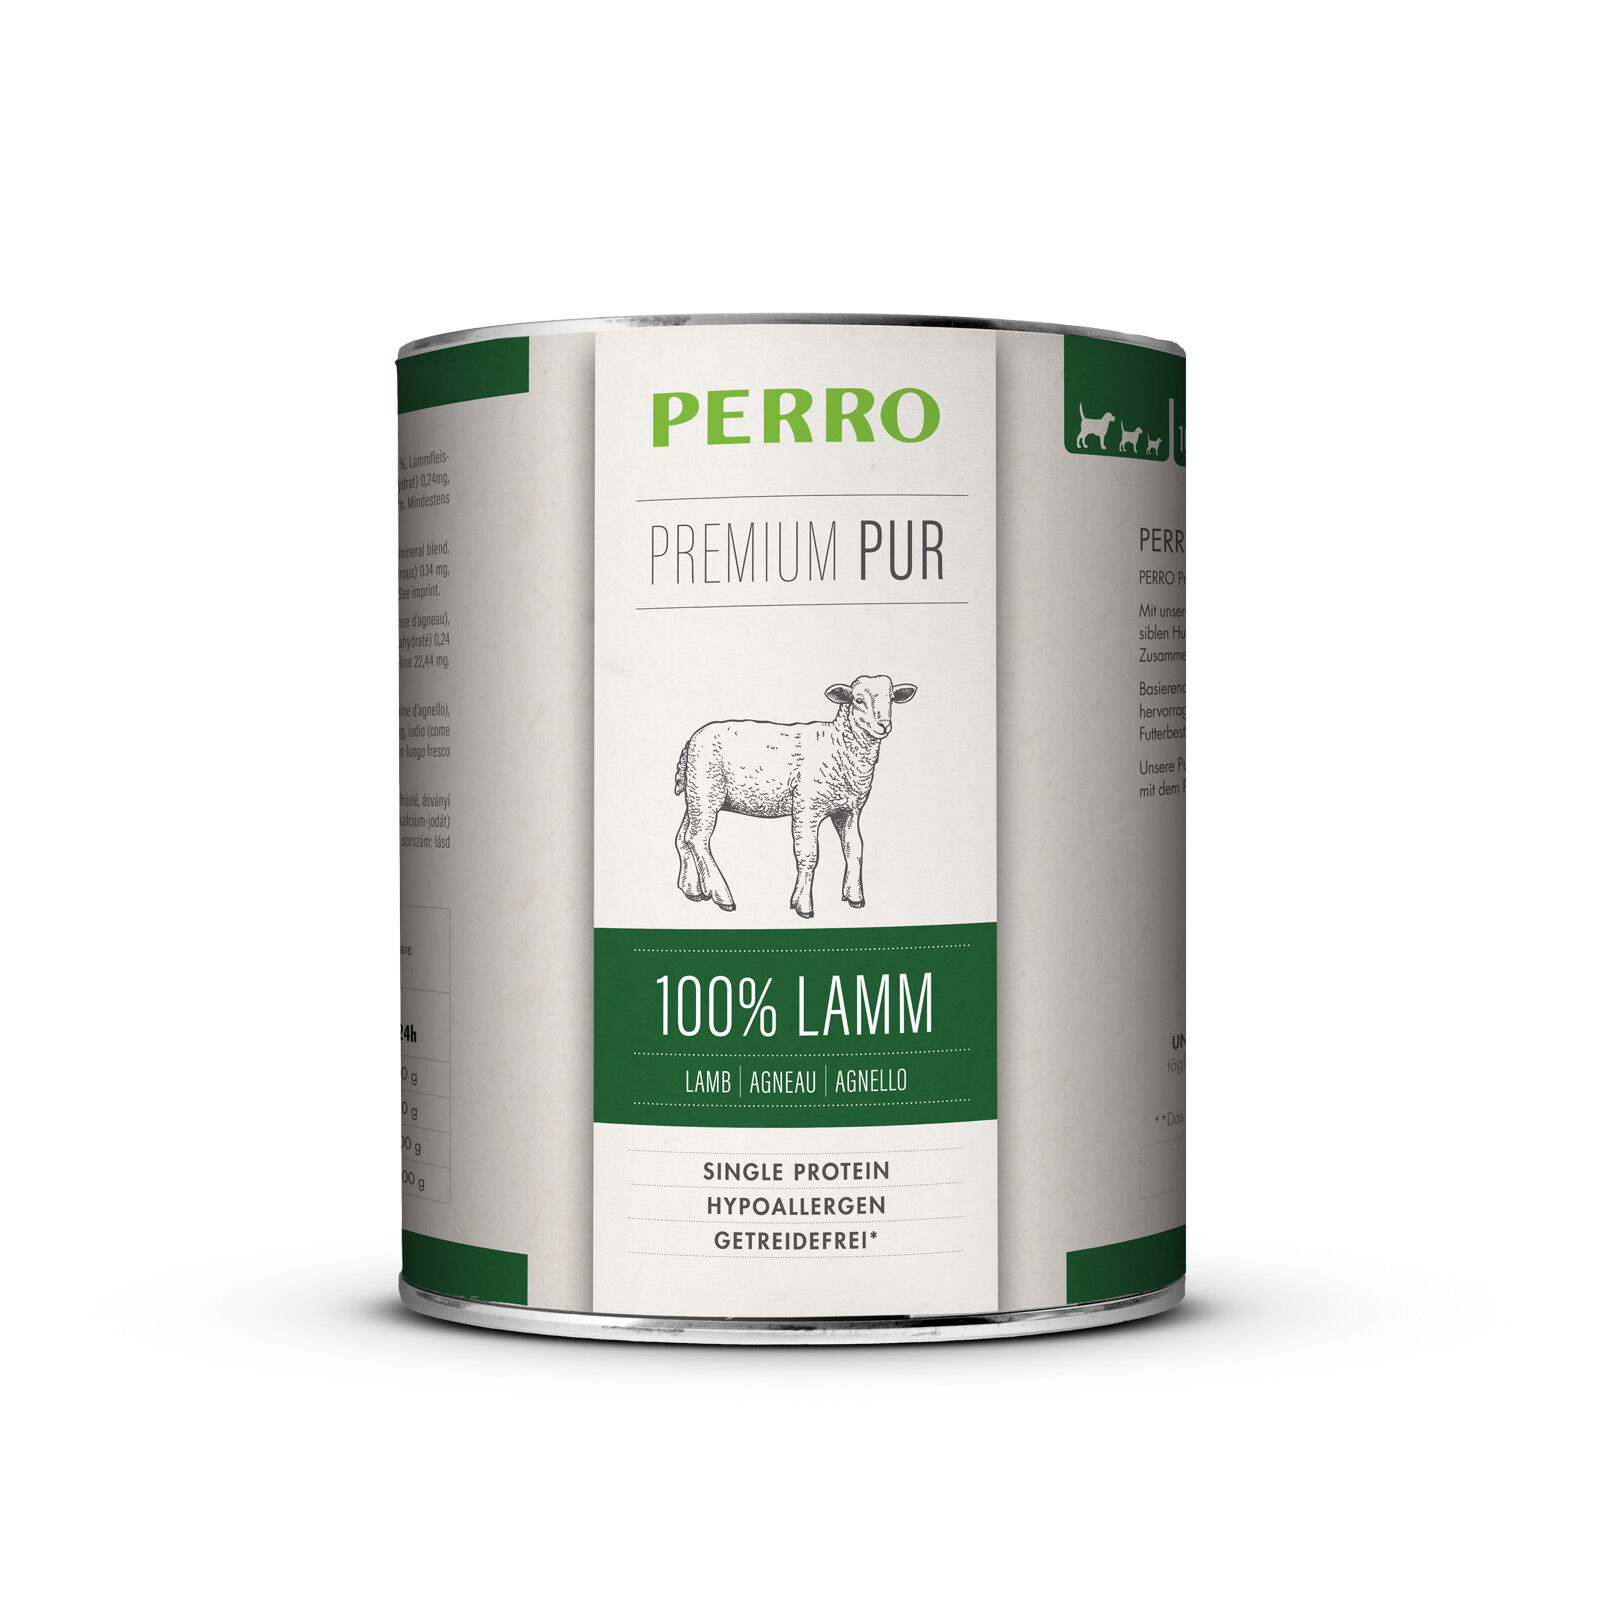 PERRO Premium Pure Lamb